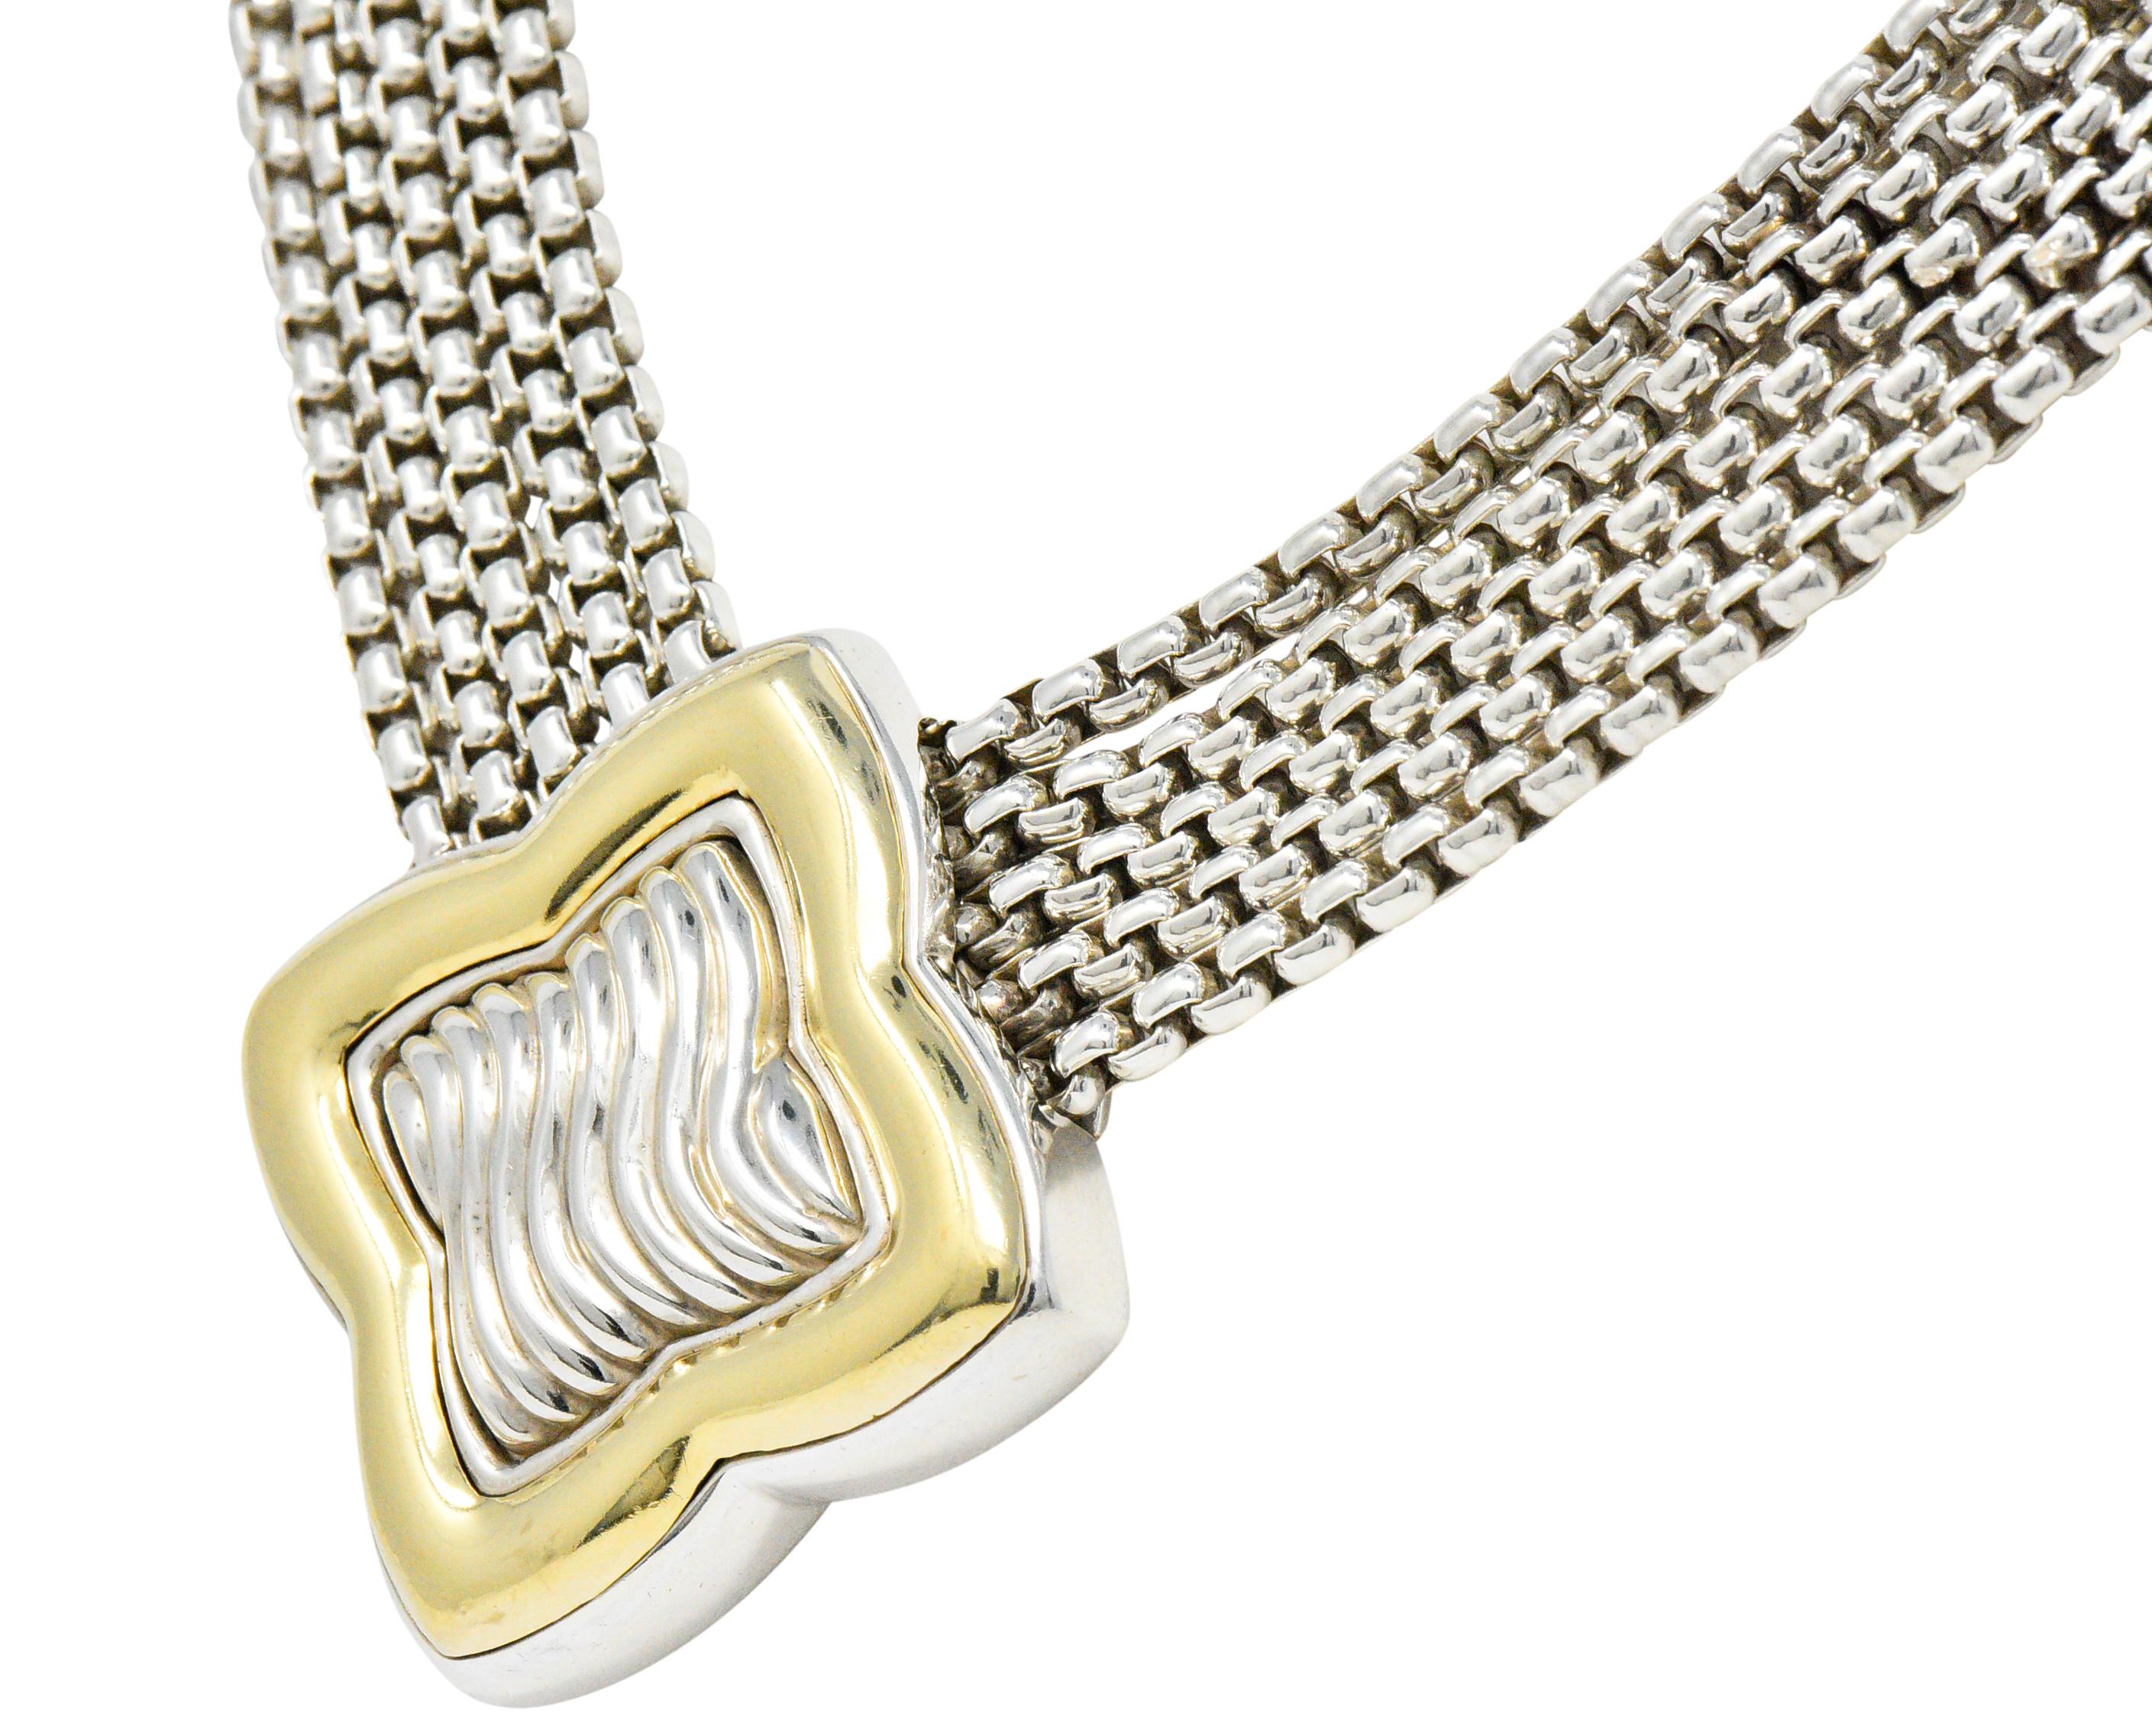 Mehrreihige Halskette mit einer großen, vierblättrigen Station in der Mitte mit tief geriffeltem Silber 
umgeben von einer hochglanzpolierten Goldlünette

Aufgehängt an fünf Strängen einer silbernen Kastenkette

Vervollständigt durch Endkappen mit